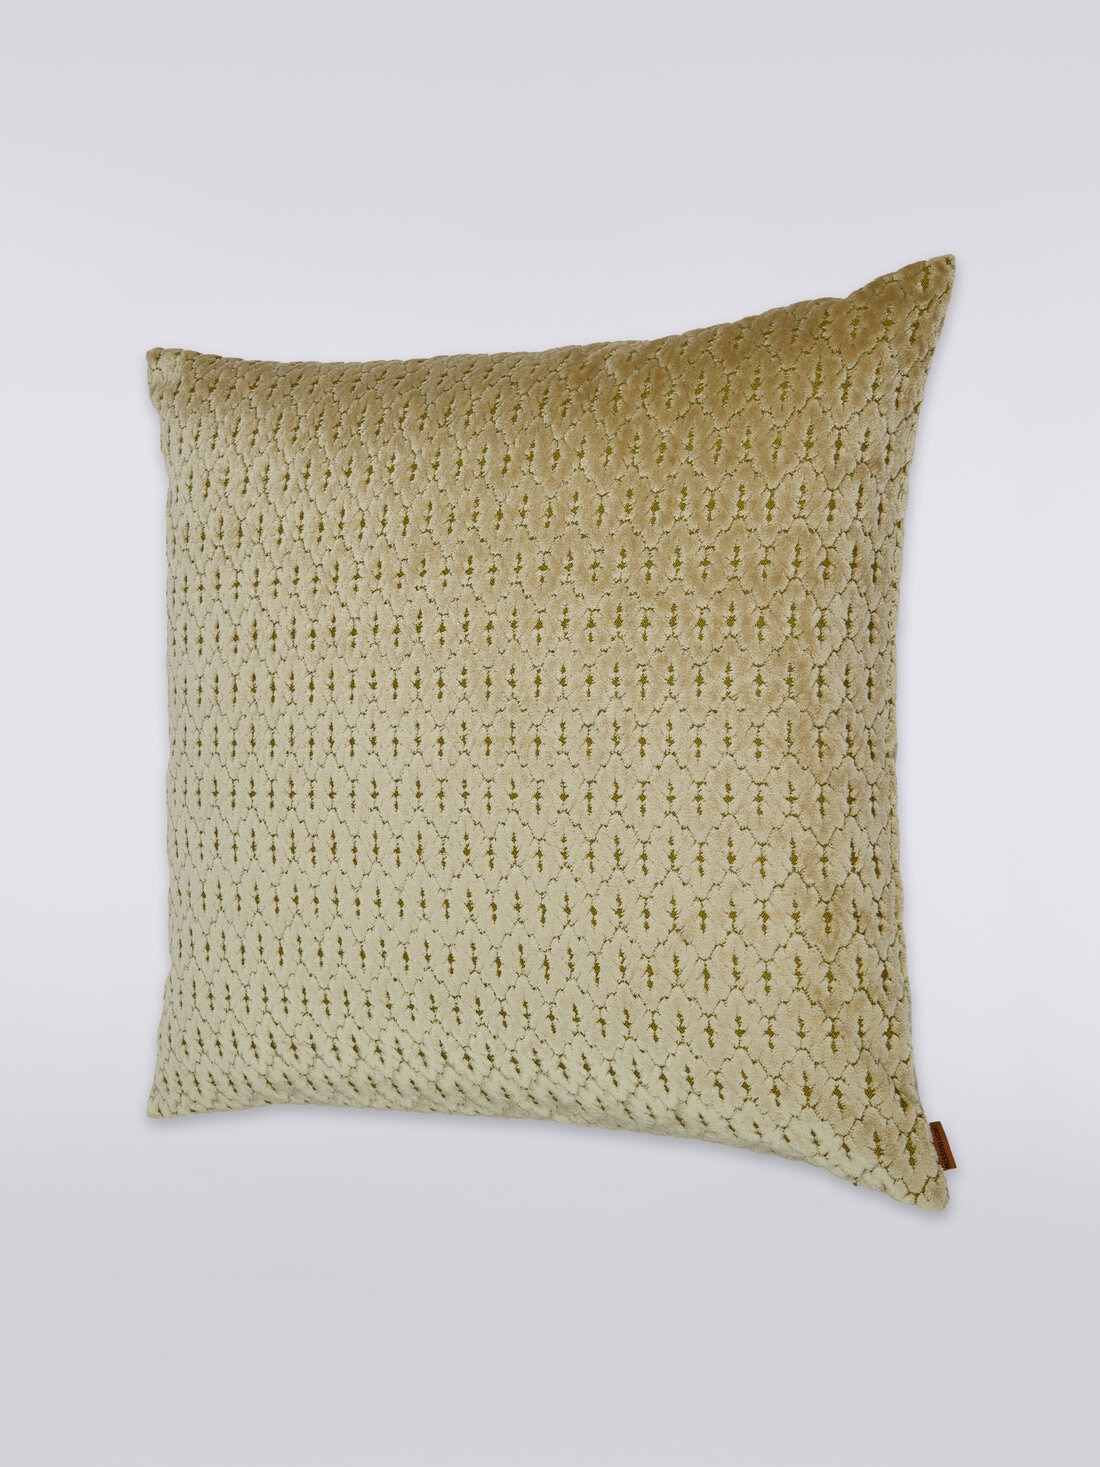 Bergerac cushion 50x50 cm, Multicoloured  - 8051275607410 - 1